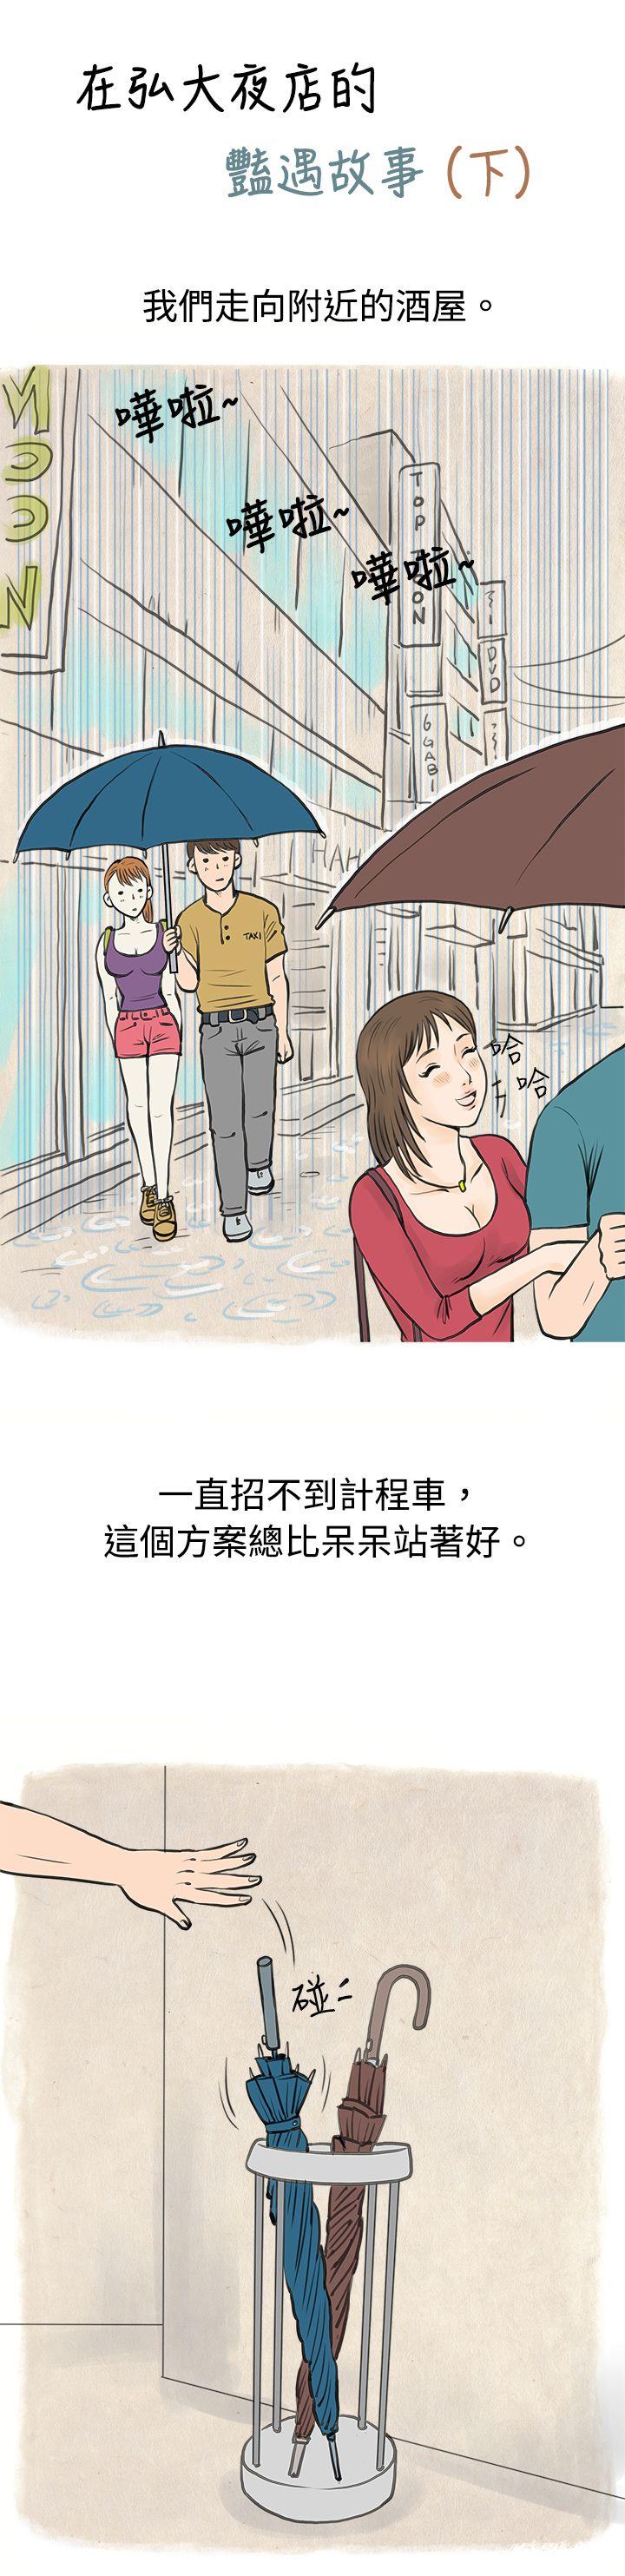 秘密Story  在弘大夜店的豔遇故事(下) 漫画图片1.jpg